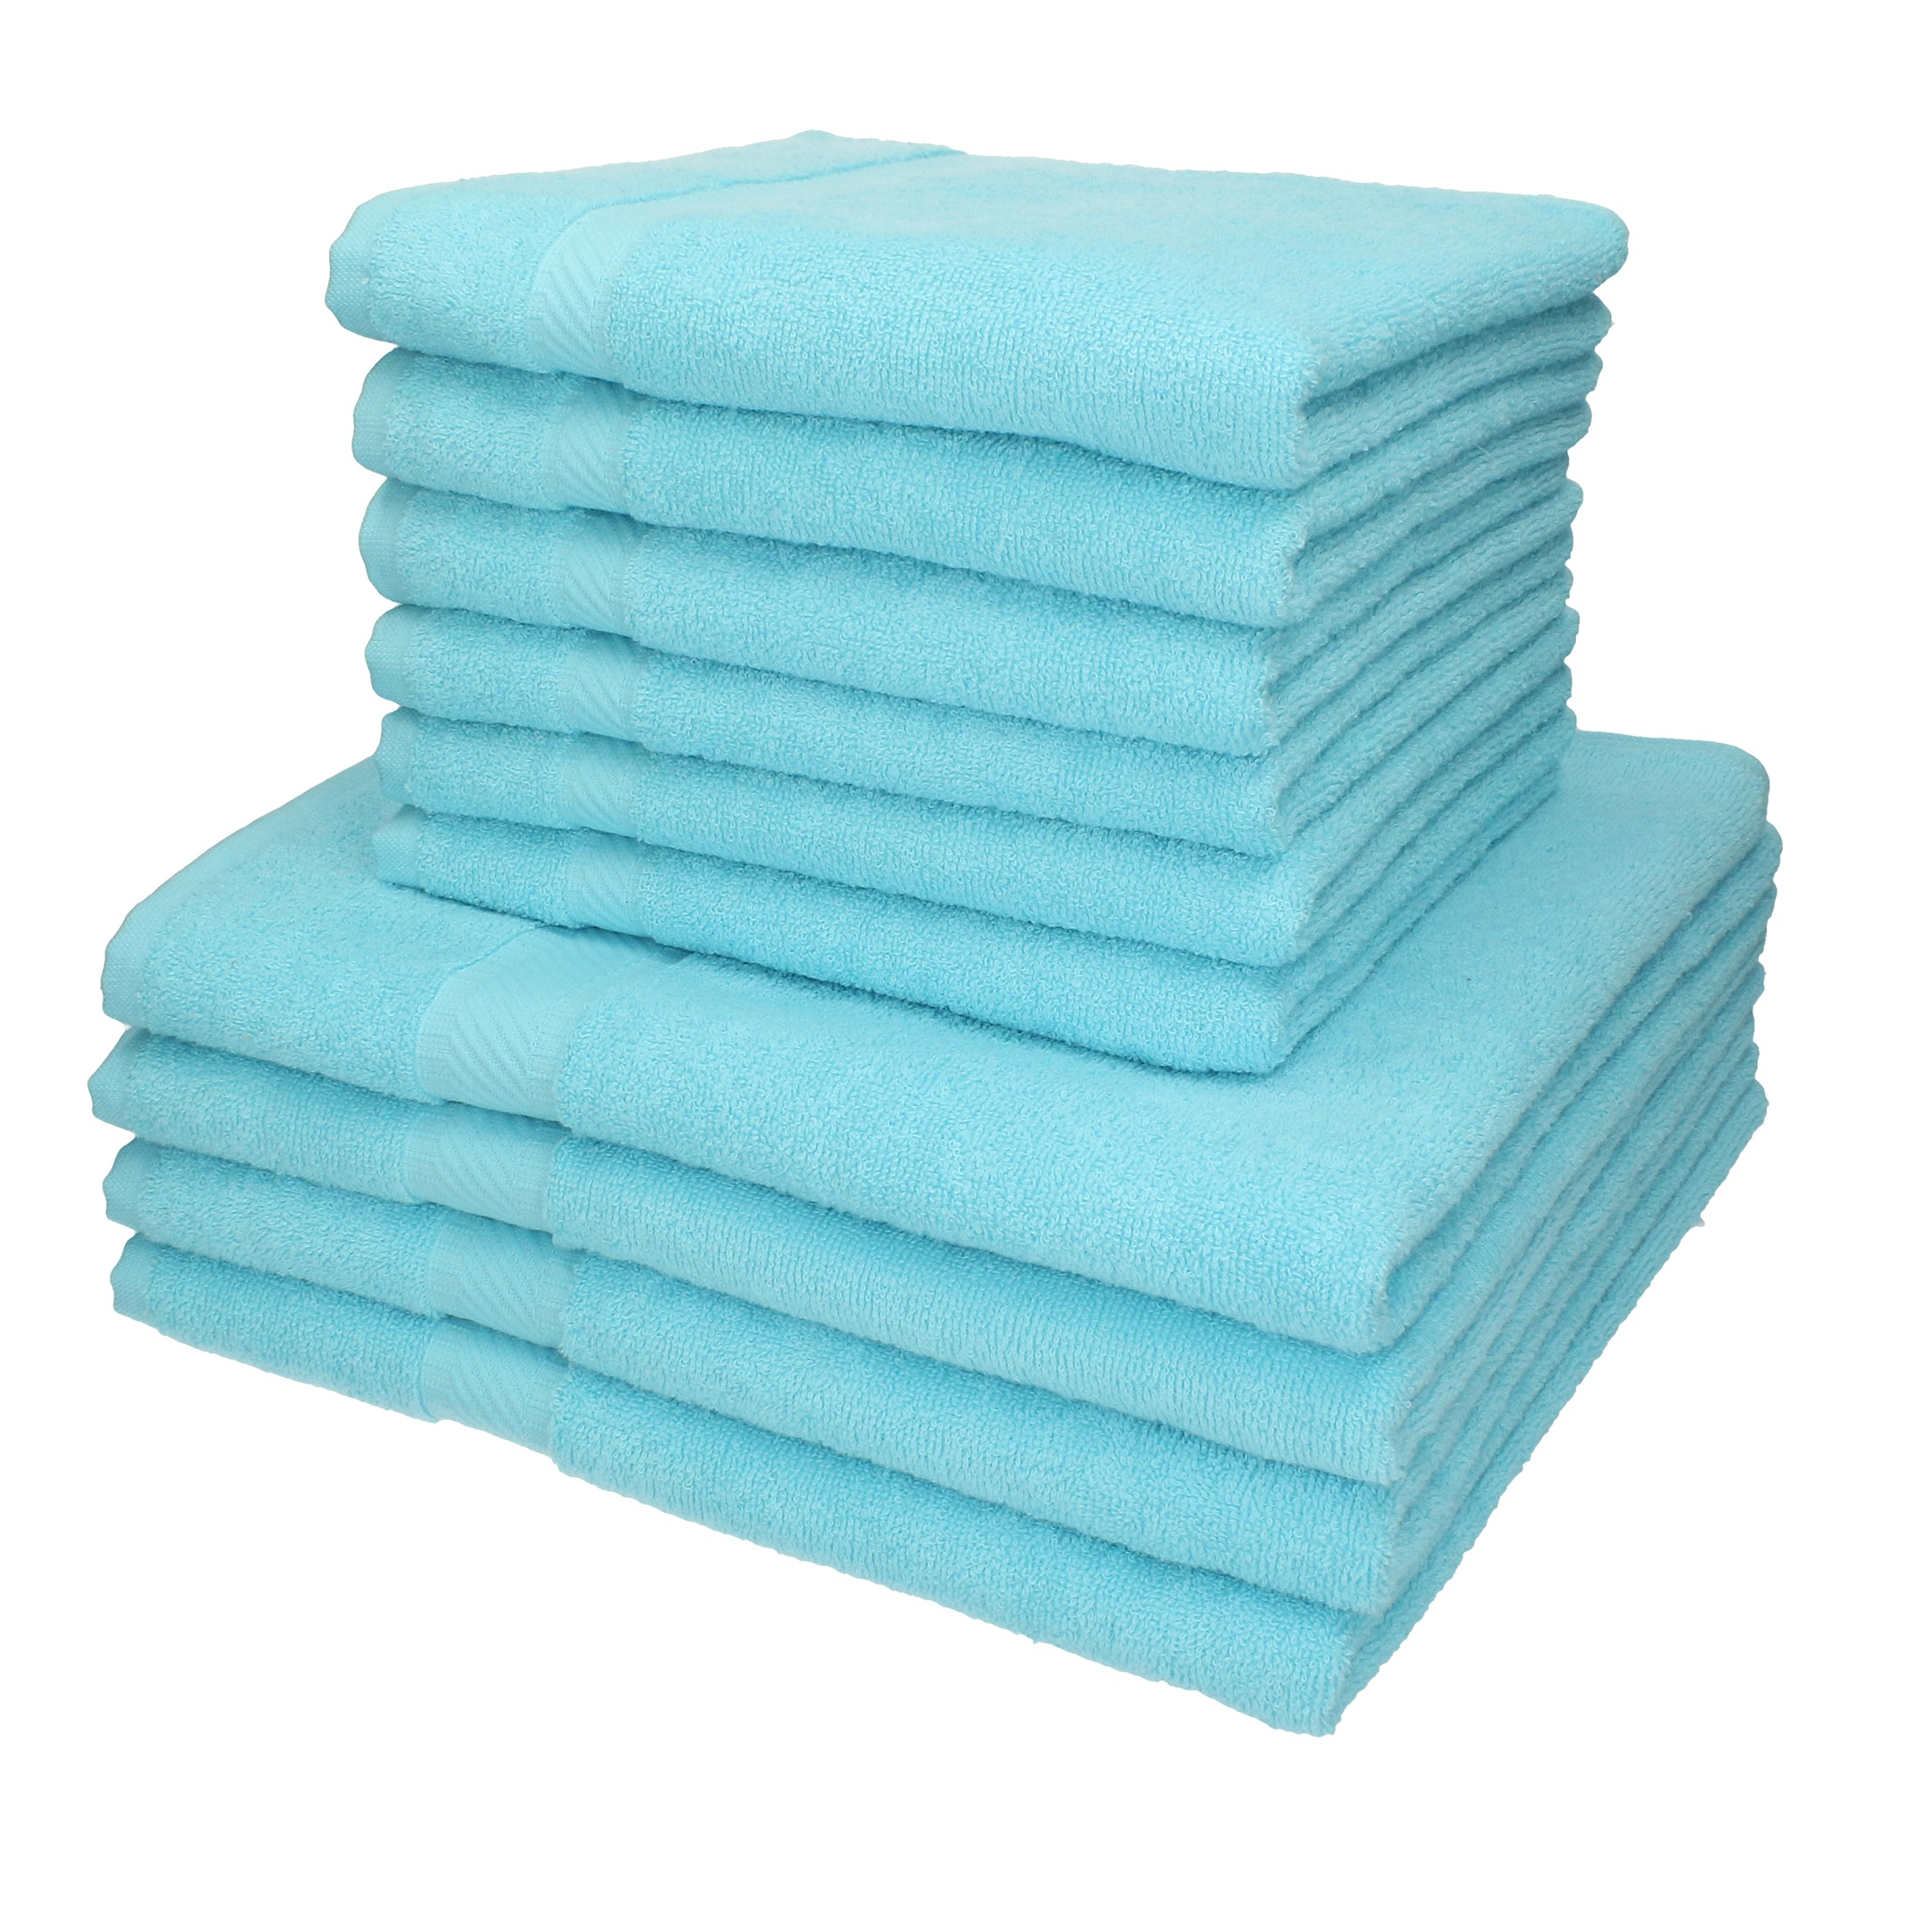 Betz 6er Handtuch Set PREMIUM 2 Duschtücher 4 Handtücher 100% BW blau türkis 